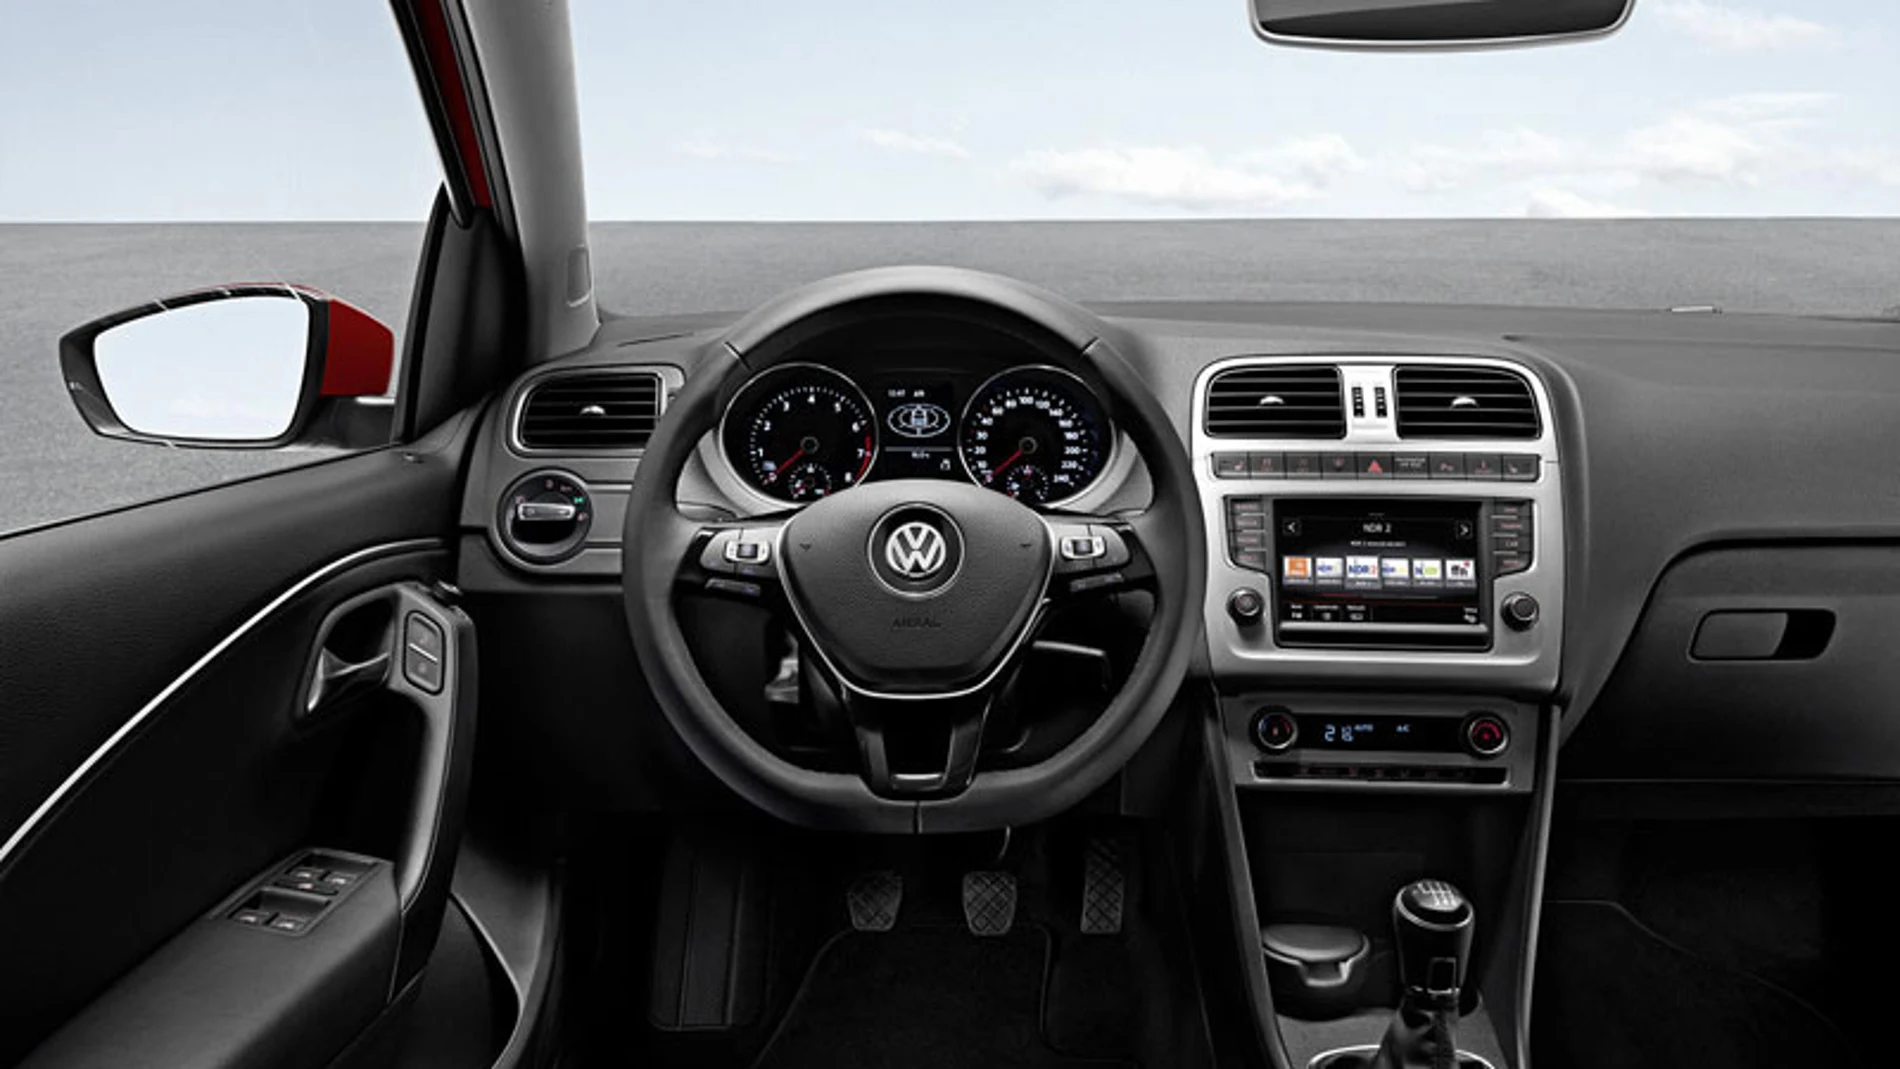 En el interior destaca el nuevo volante de tres radios de la gama Golf.